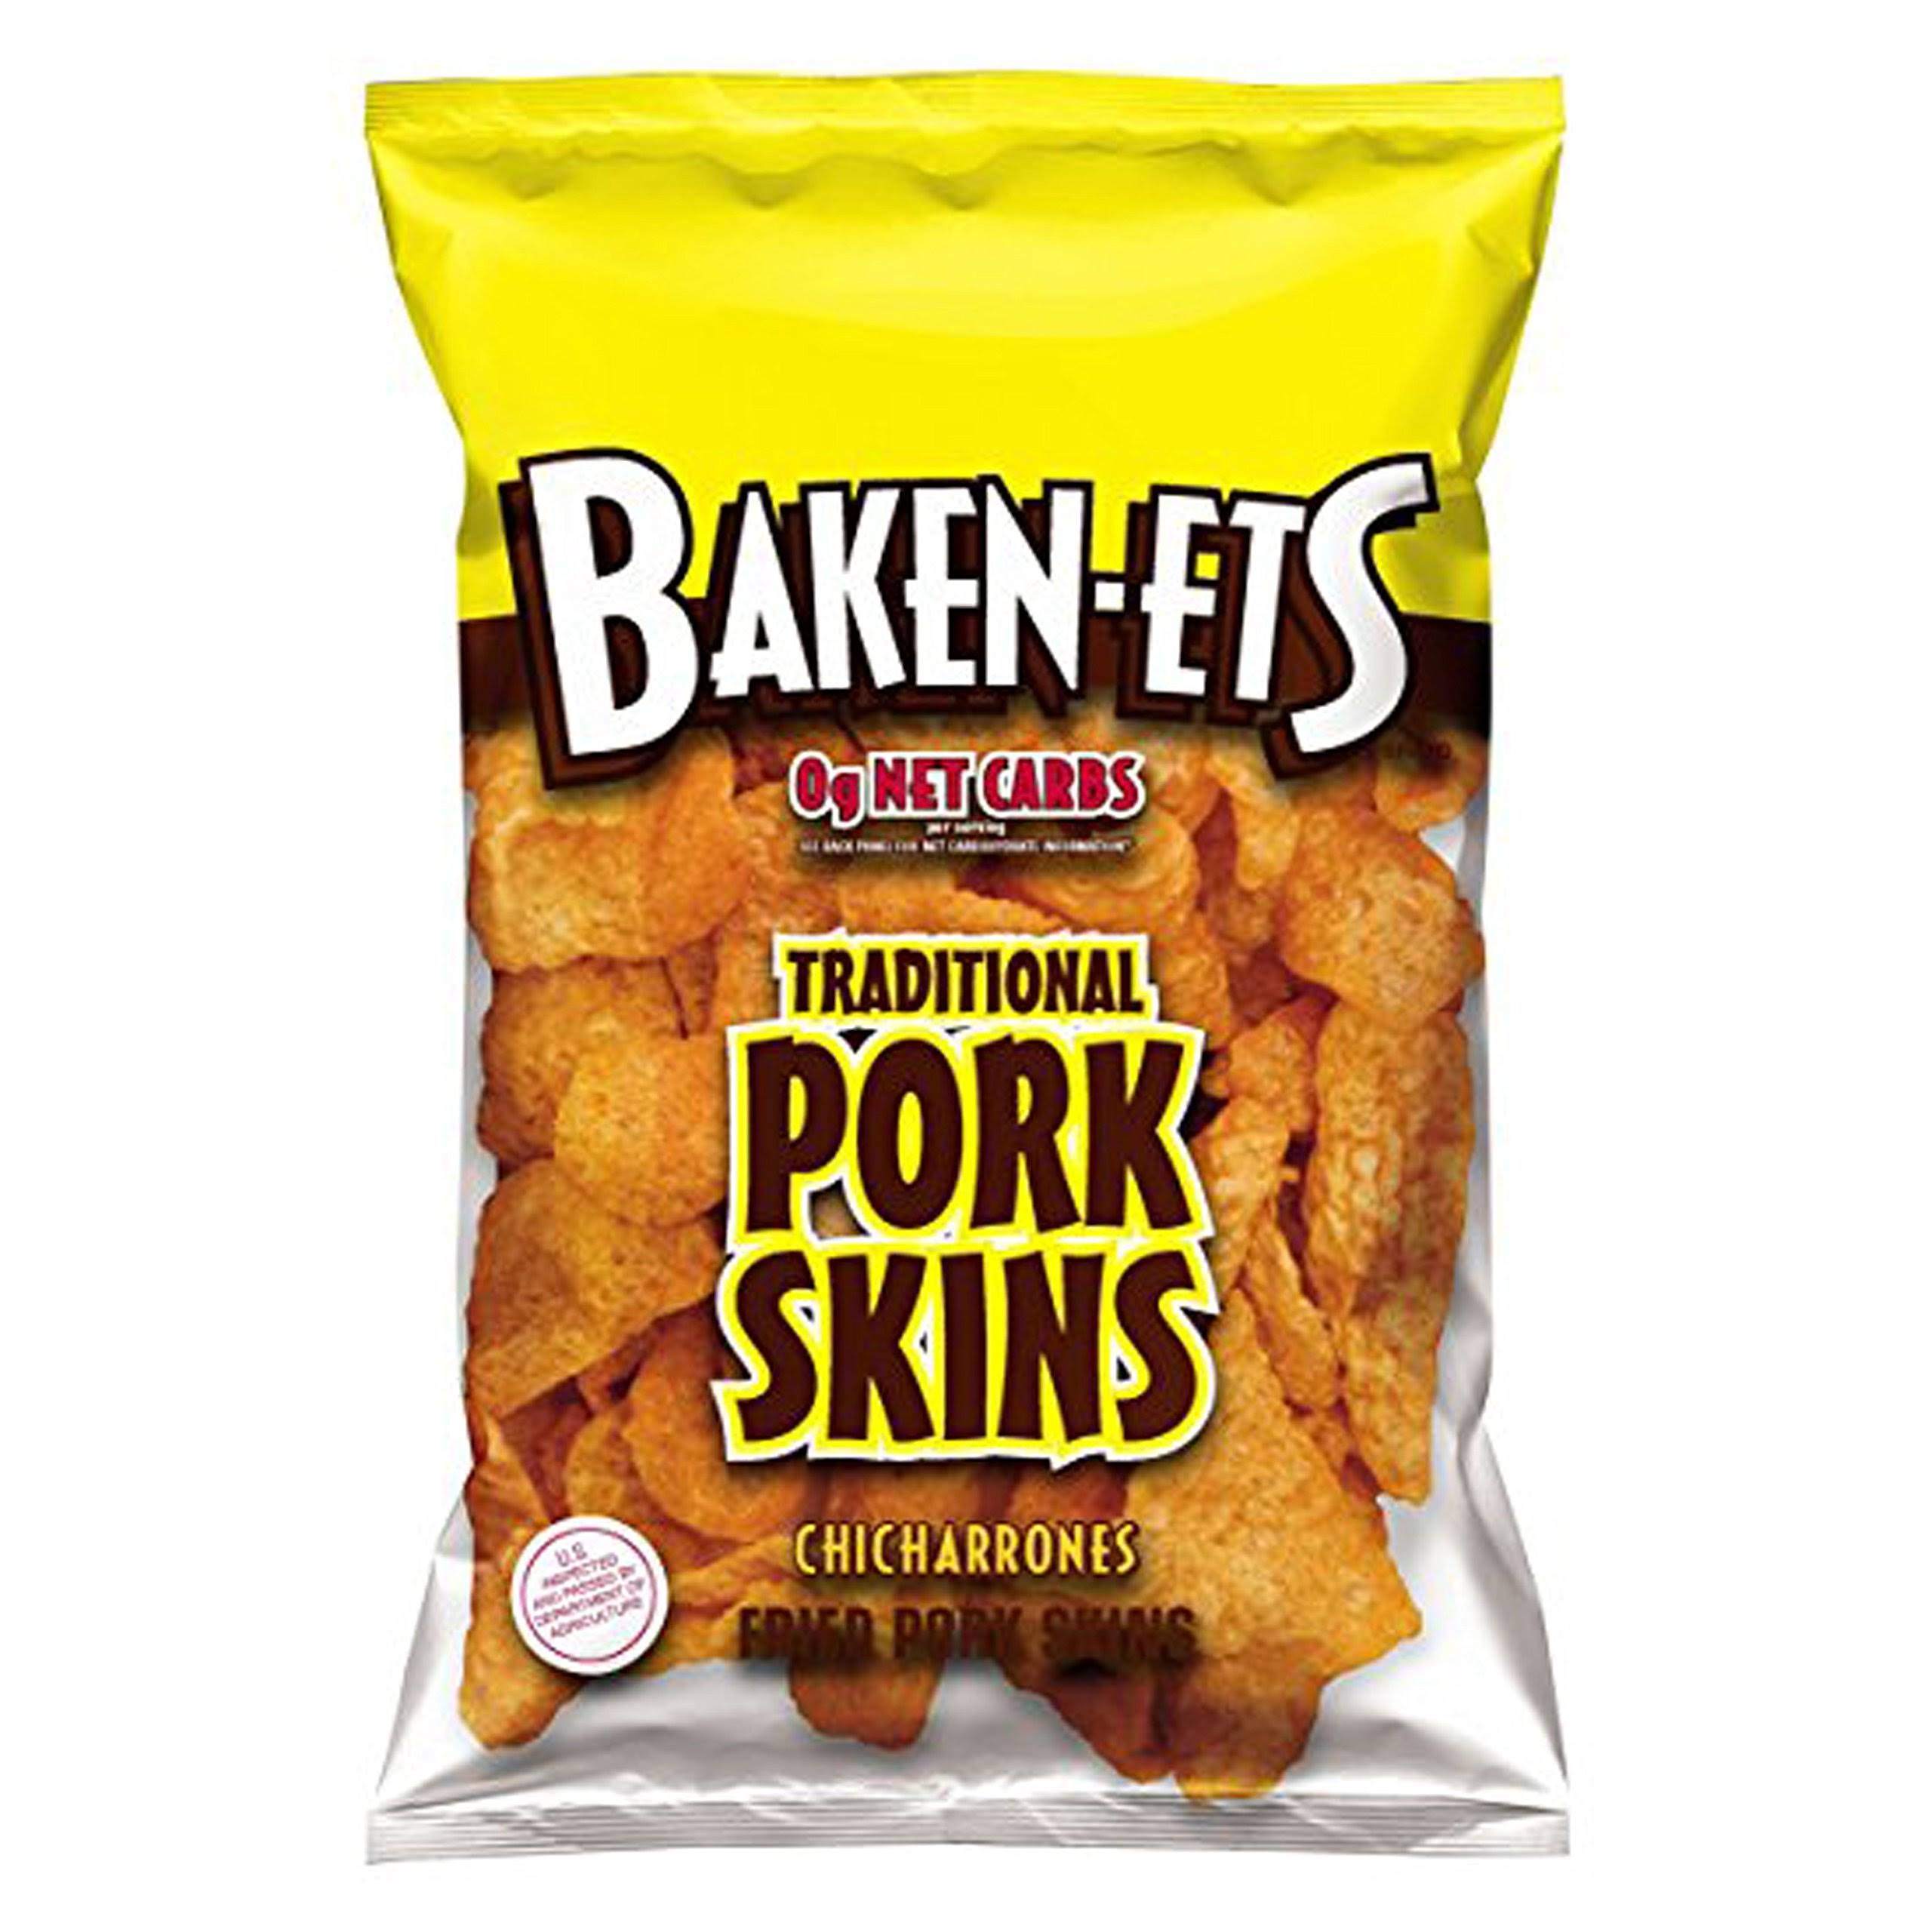 Baken Ets Fried Pork Skins, Traditional - 3 oz